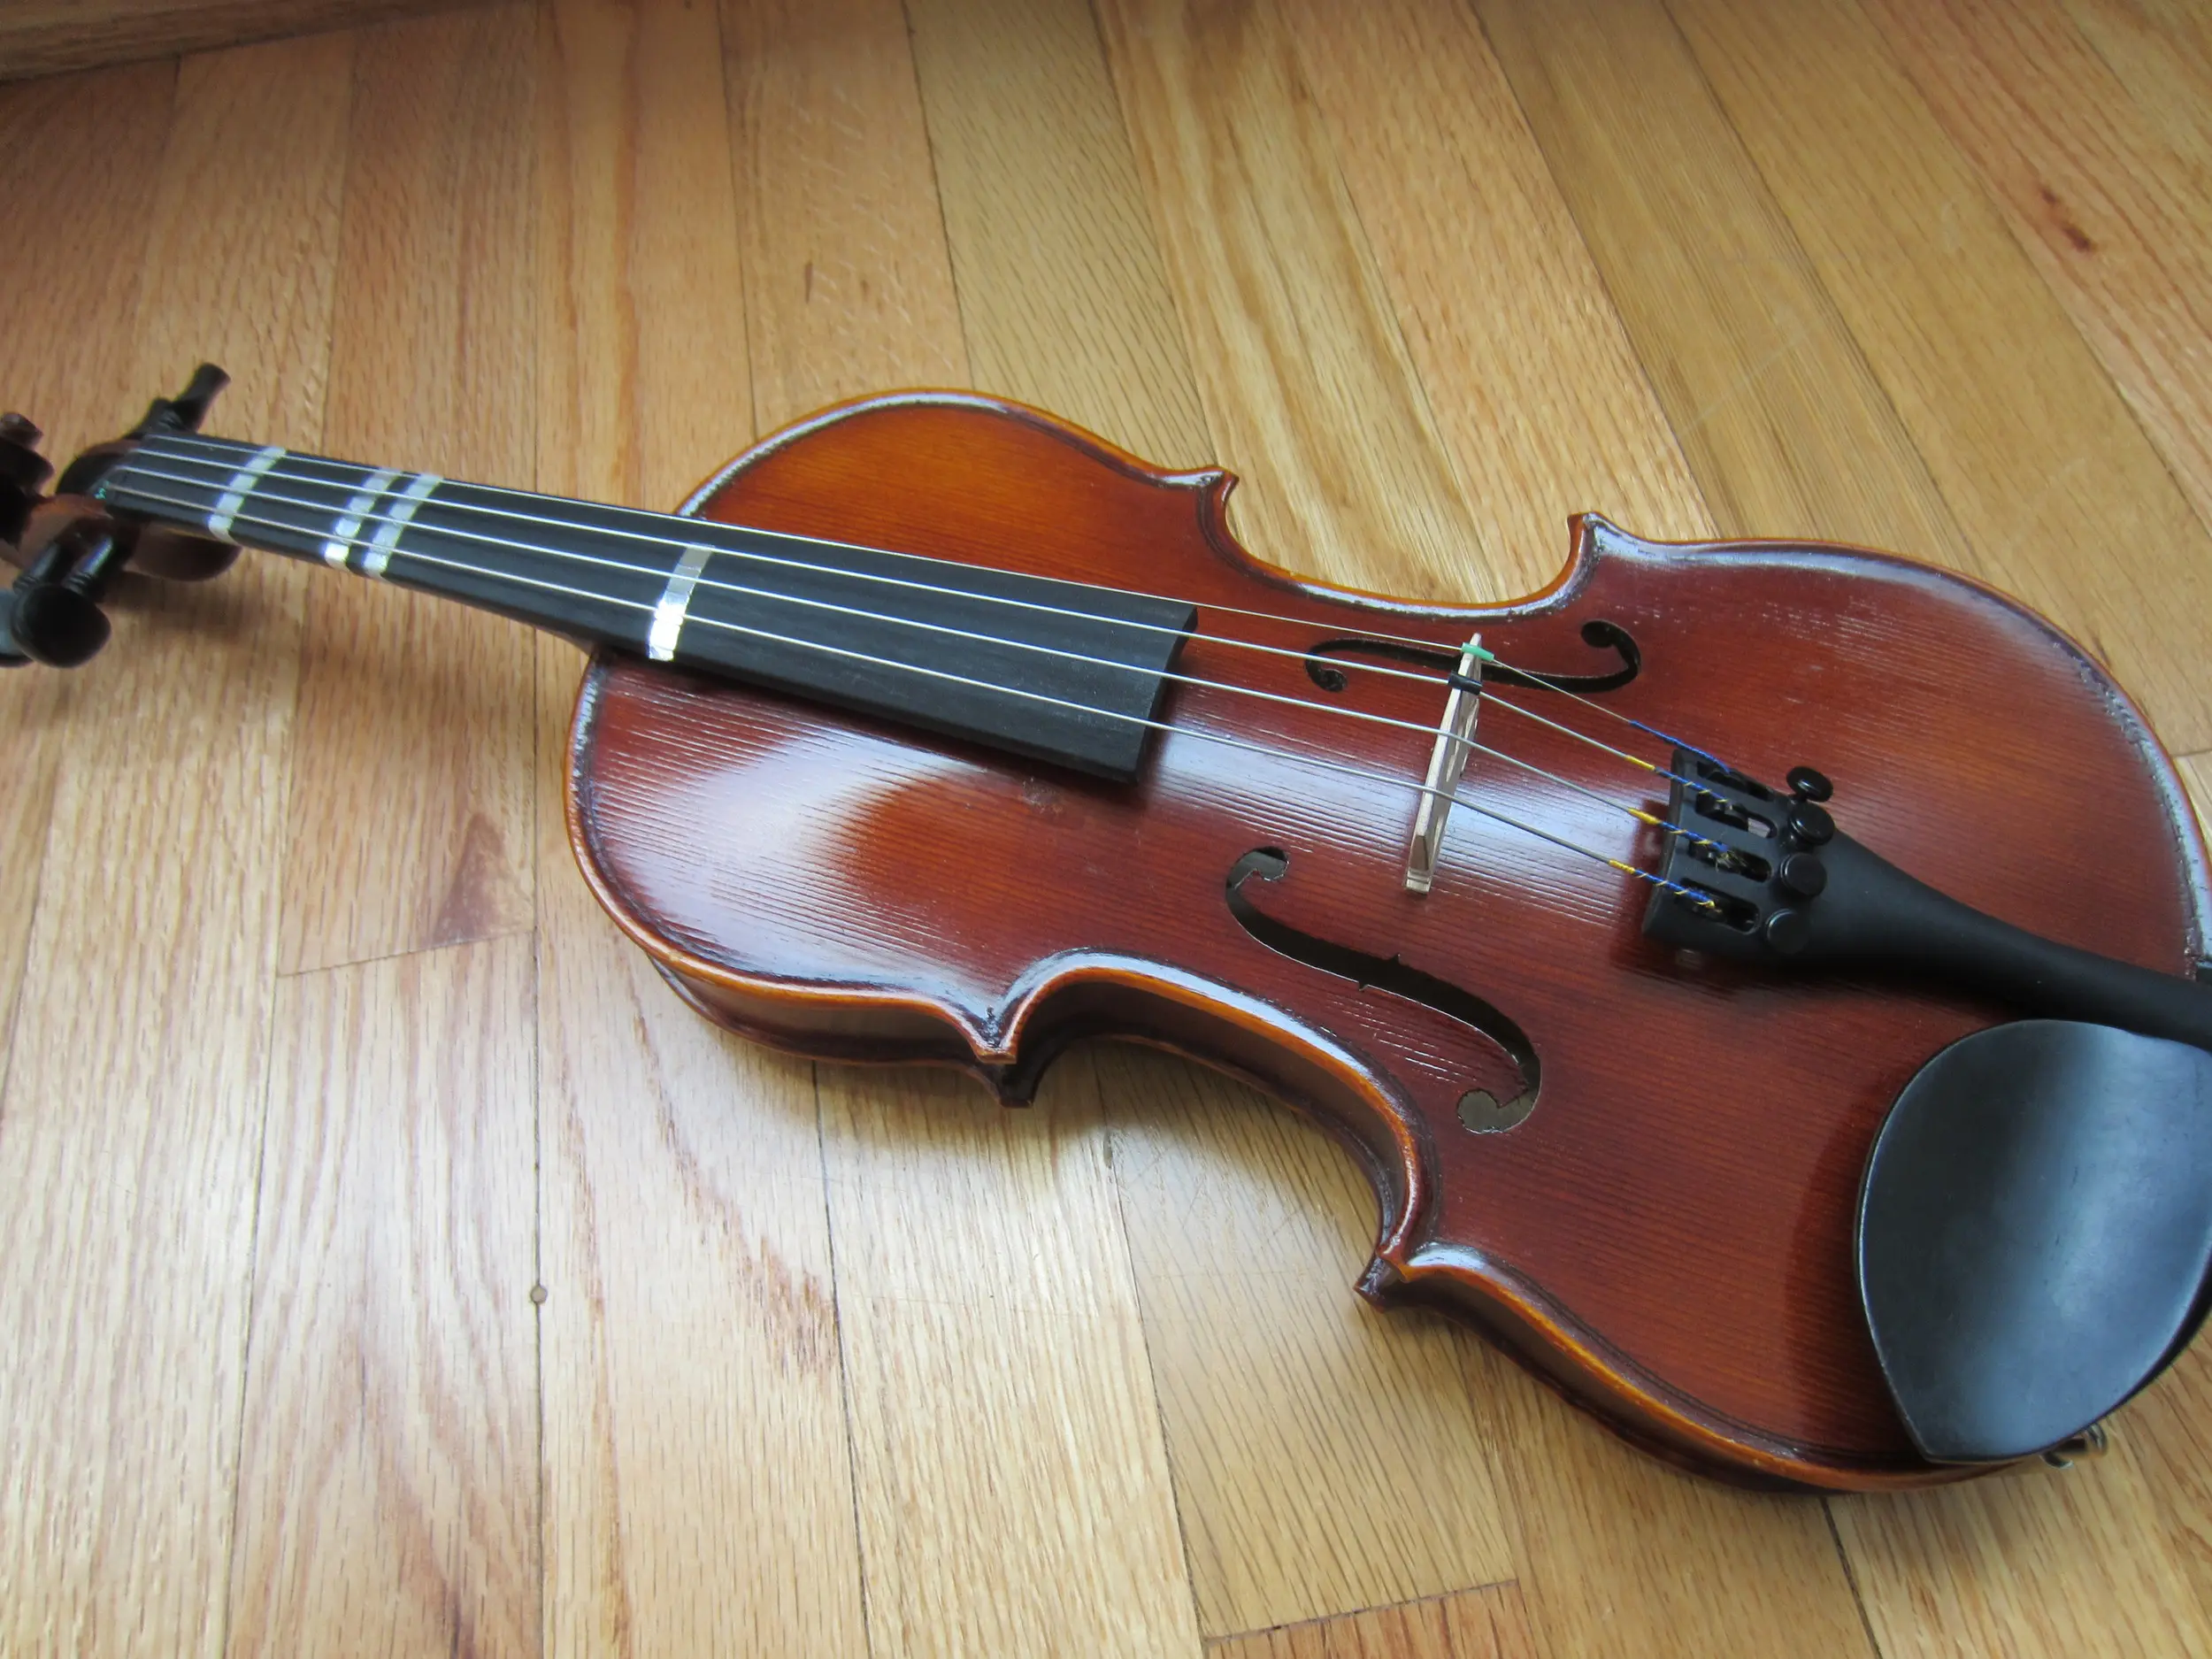 don buenos los violines hoffmann - Es bueno el violín Hoffman